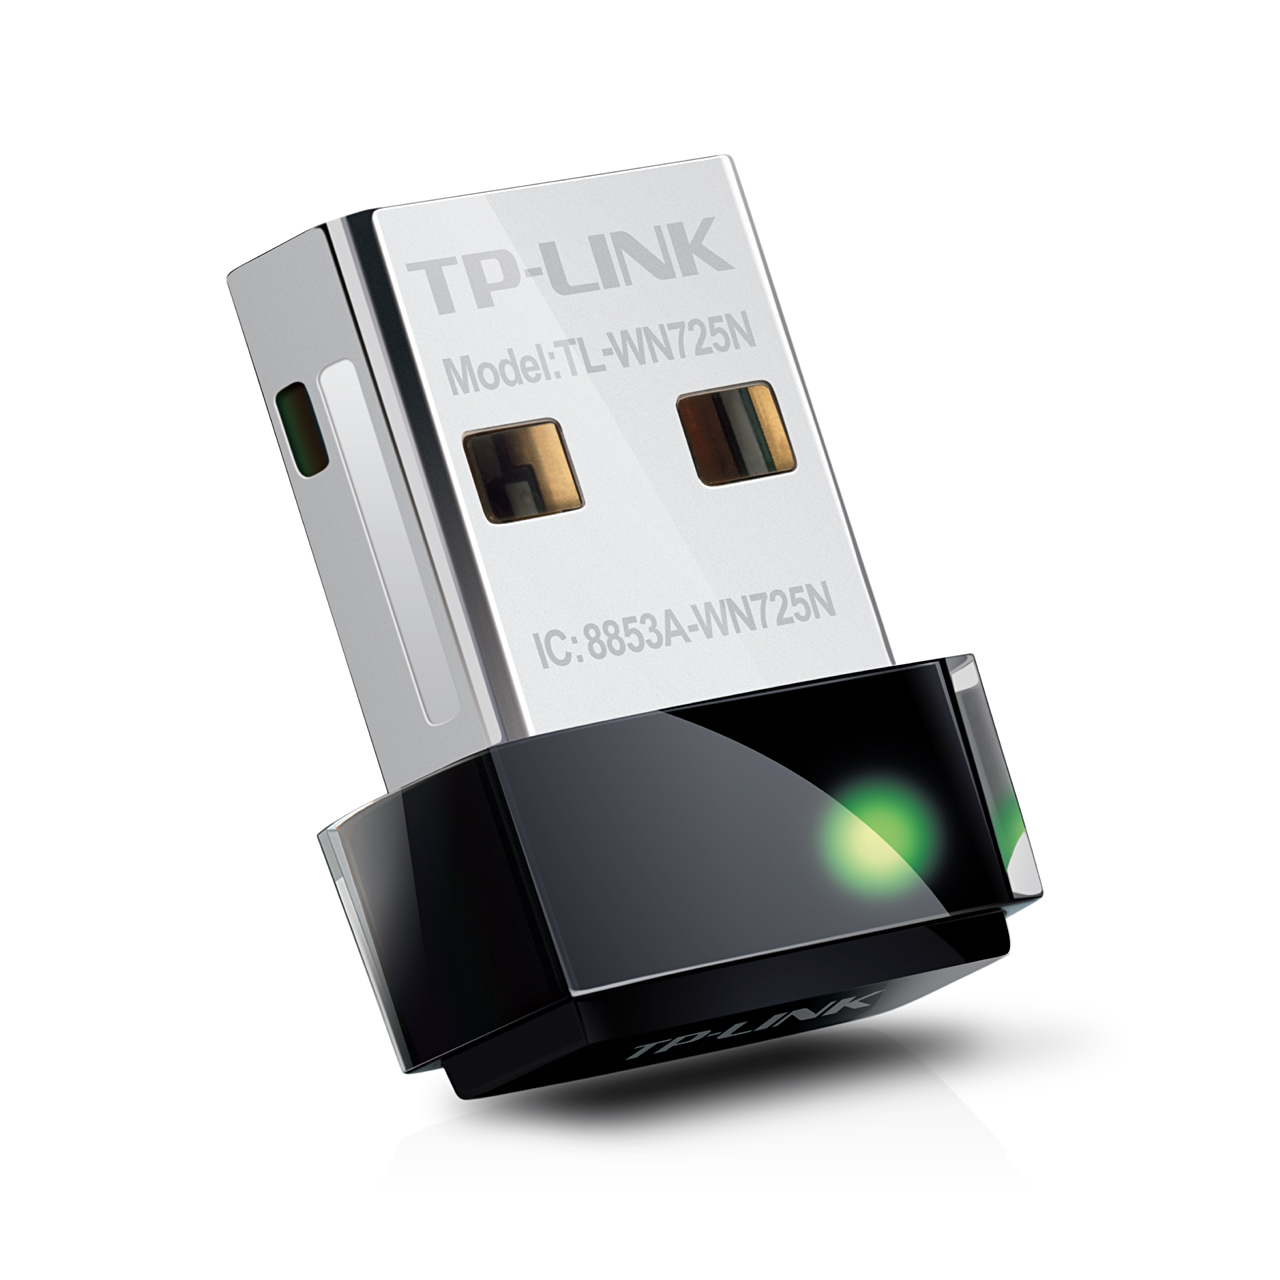 TP-Link TL-WN725N 150Mbps wireless N Nano USB